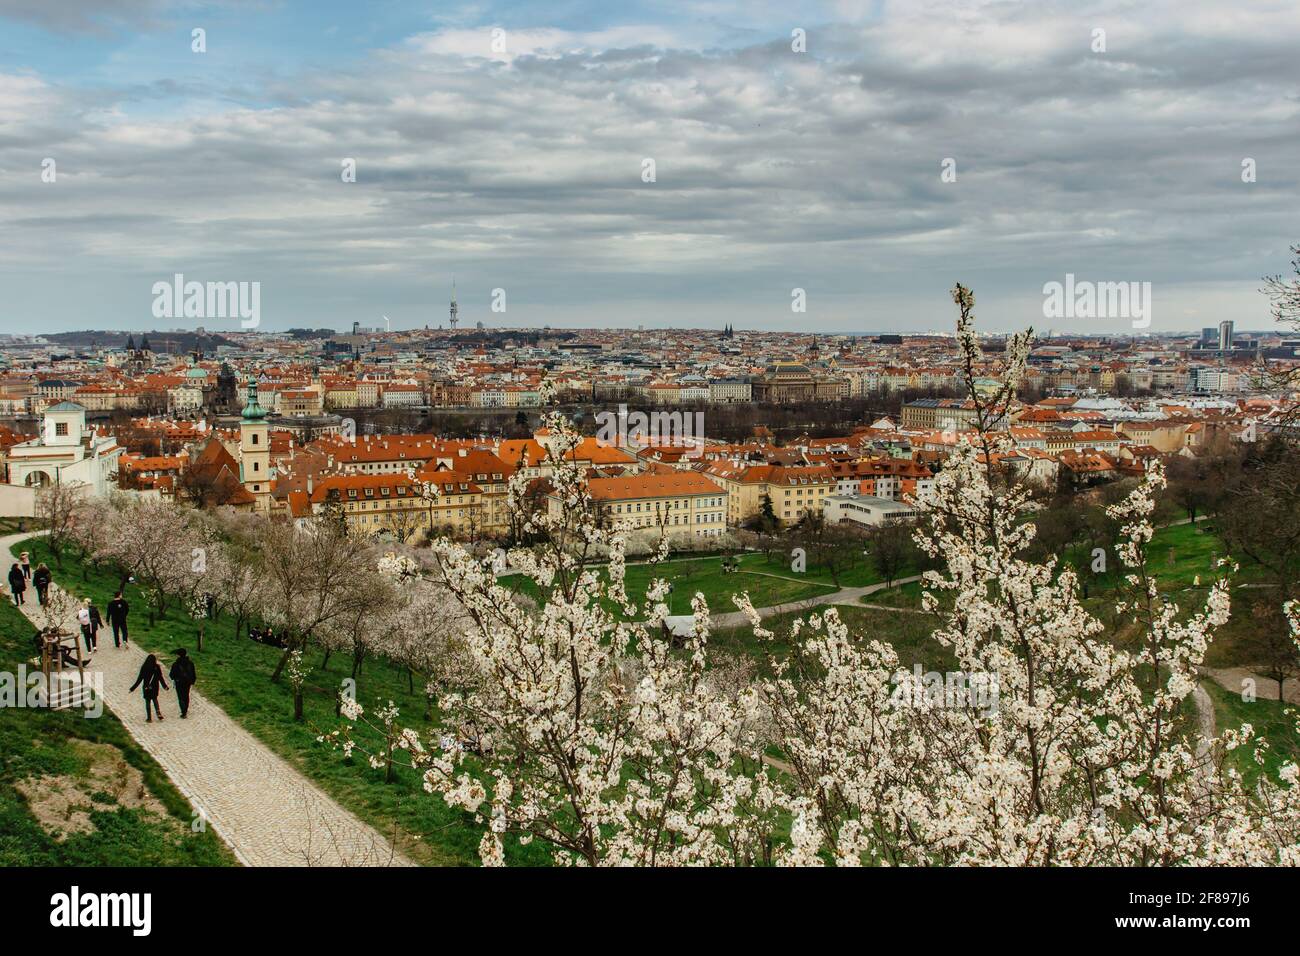 Vue panoramique aérienne de Prague, République tchèque au printemps. Cerisiers en fleurs de sakura sur la colline de Petrin. Personnes marchant dans le parc de la ville.toits rouges, tour de télévision, Banque D'Images